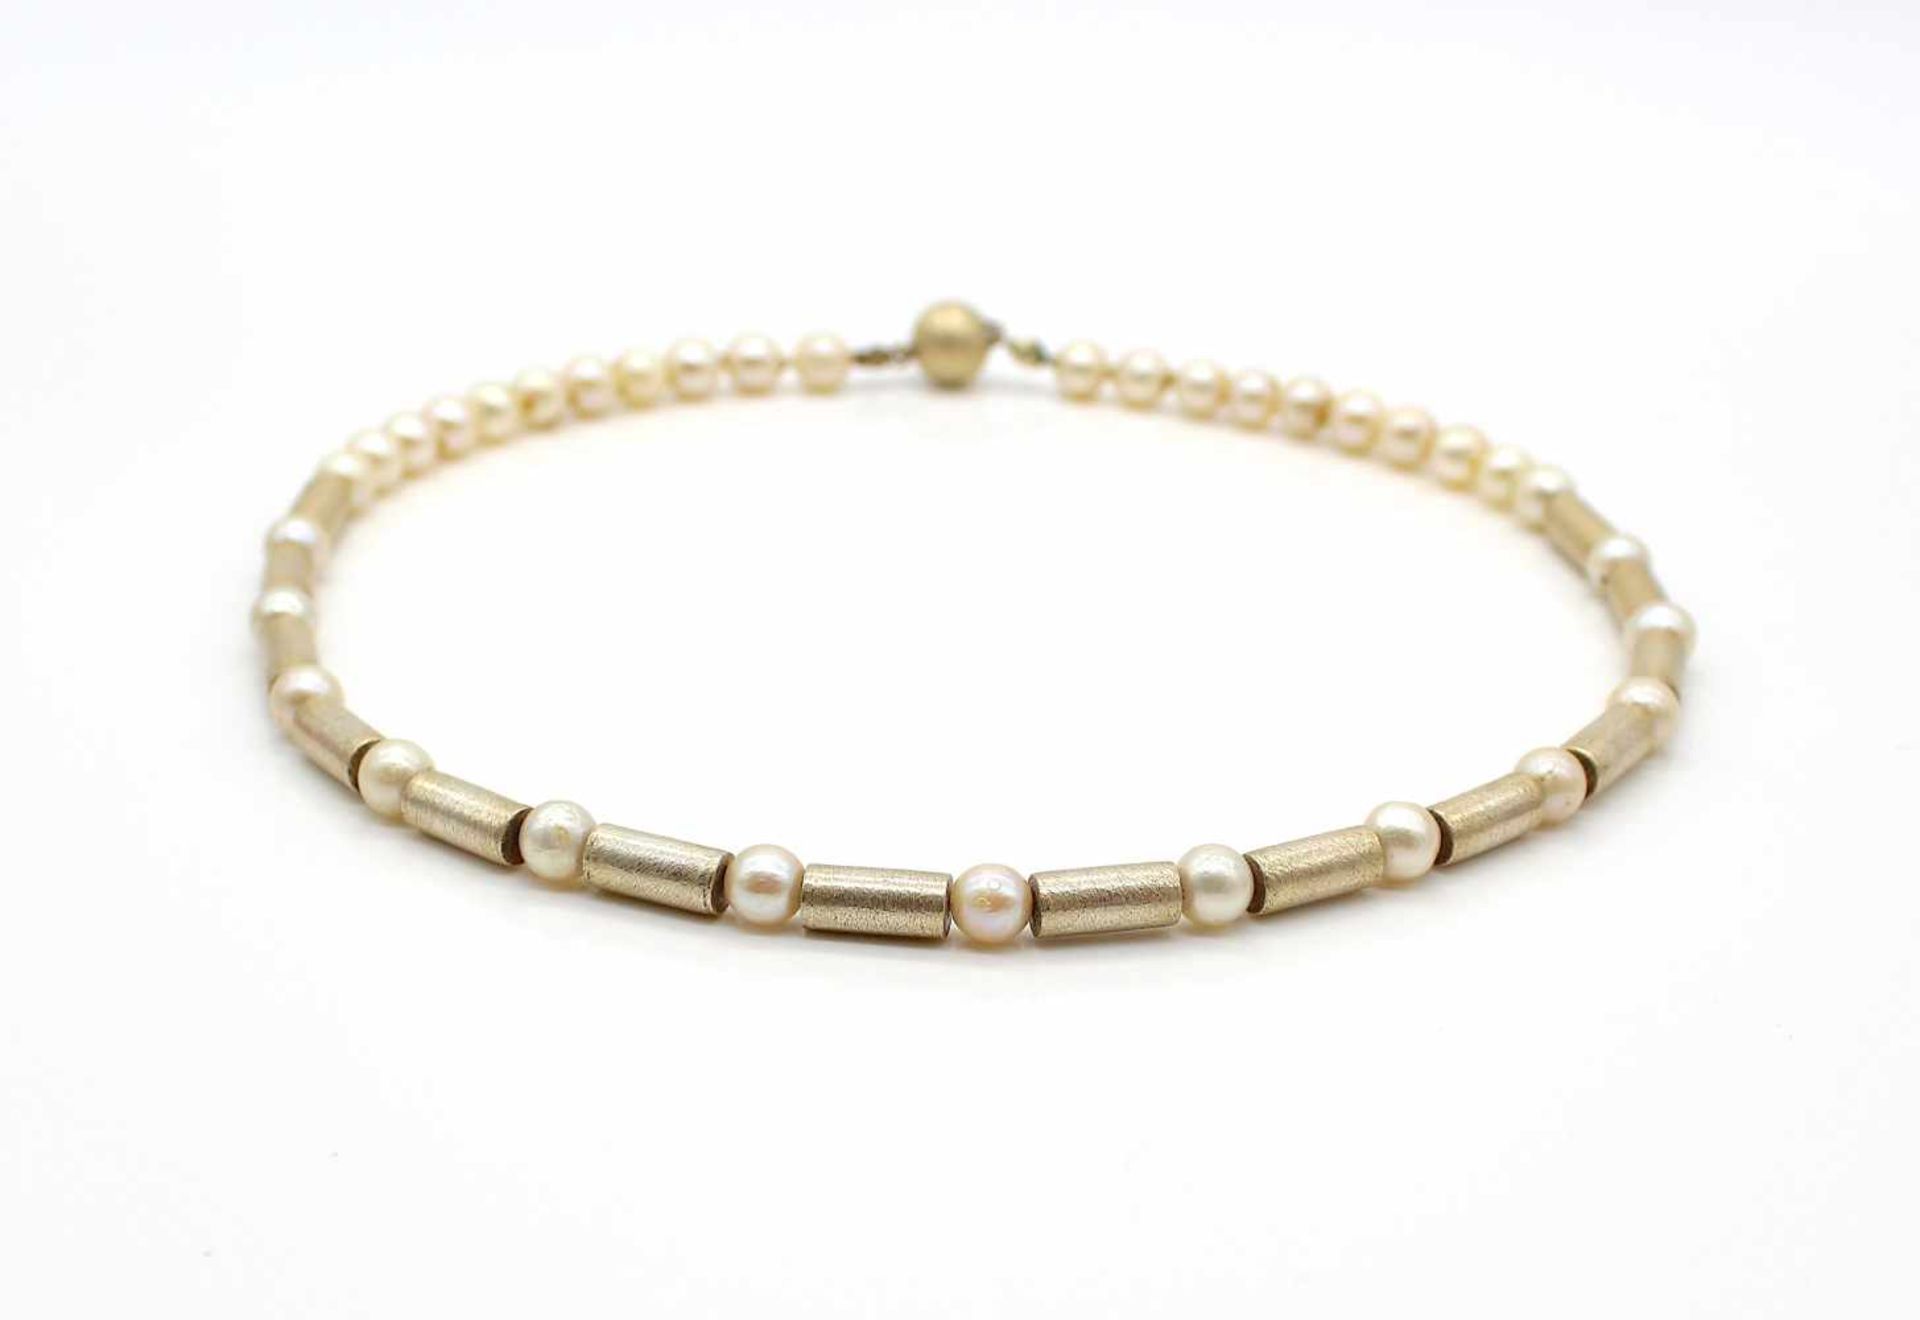 Perlenkette geprüft auf Silber / vergoldet. Länge 47 cm, mit MagnetschloßPearl necklace tested for